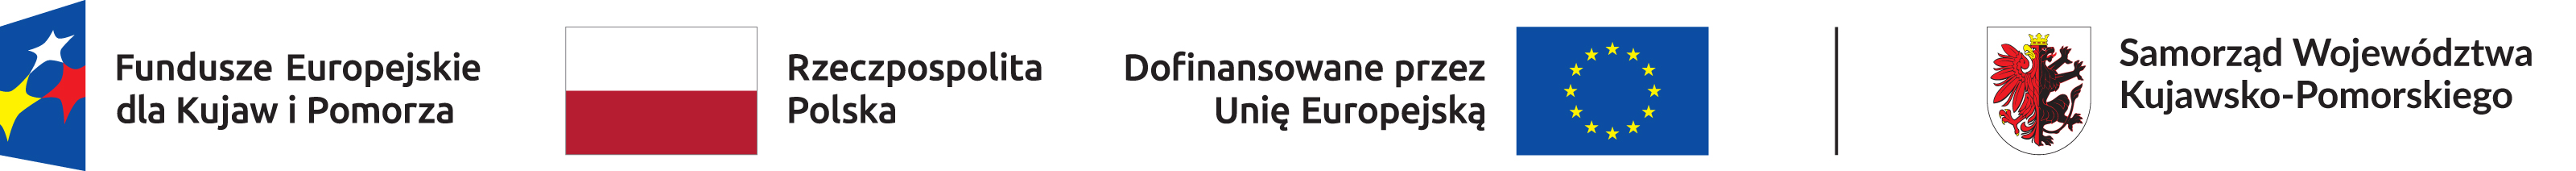 Fundusze Europejskie - Polska - Dofinansowano z UE - Samorząd kuj-pom